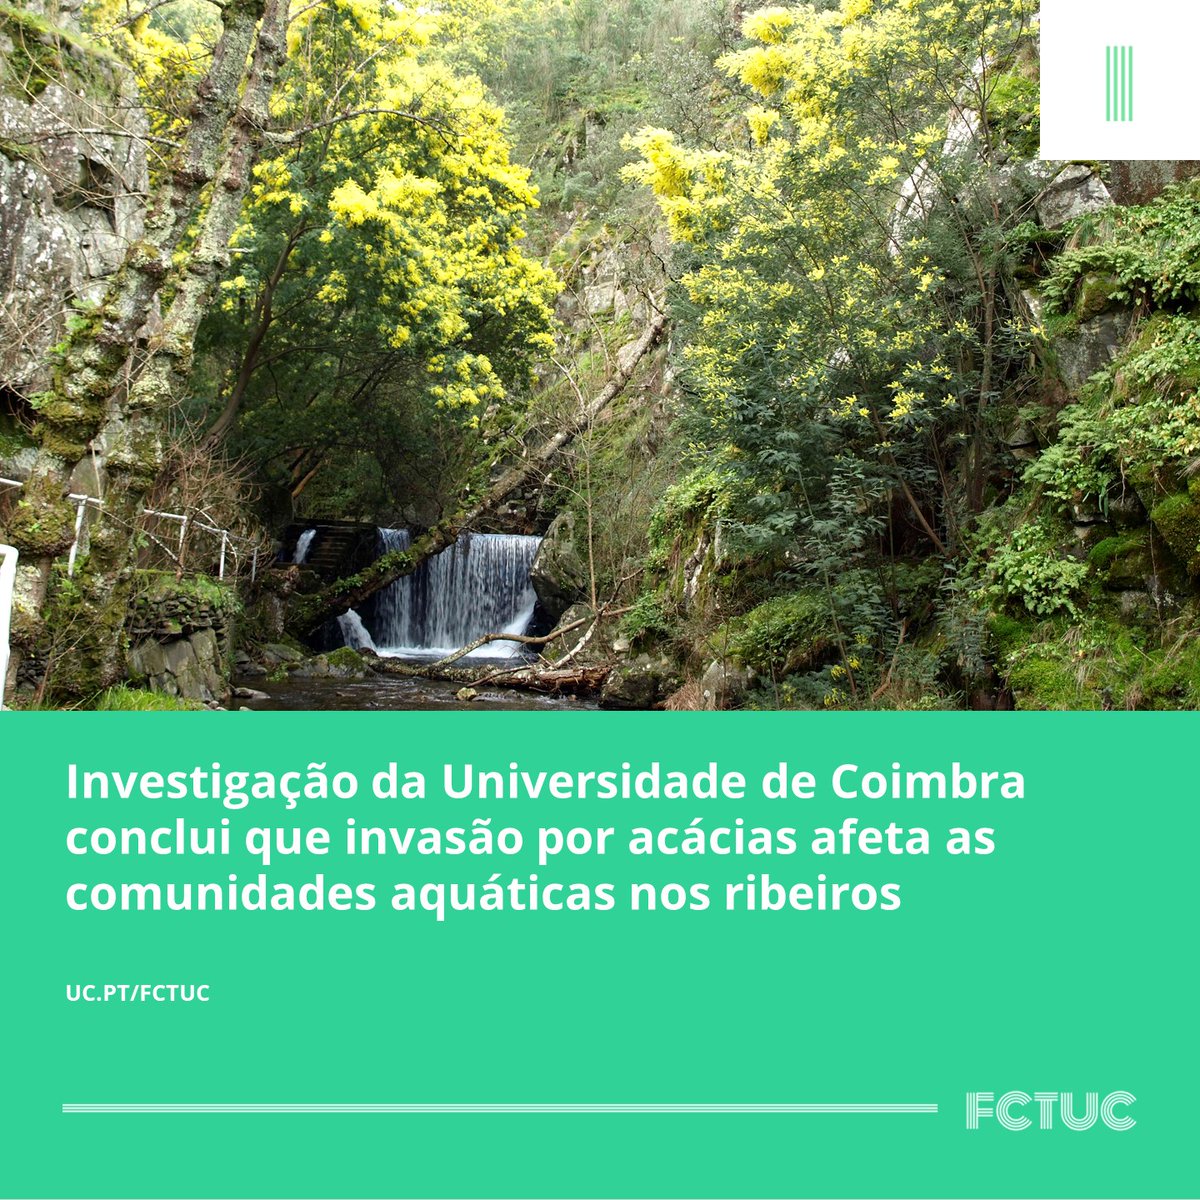 Investigação da Universidade de Coimbra conclui que invasão por acácias afeta as comunidades aquáticas nos ribeiros. Mais informações aqui: uc.pt/fctuc/noticias…